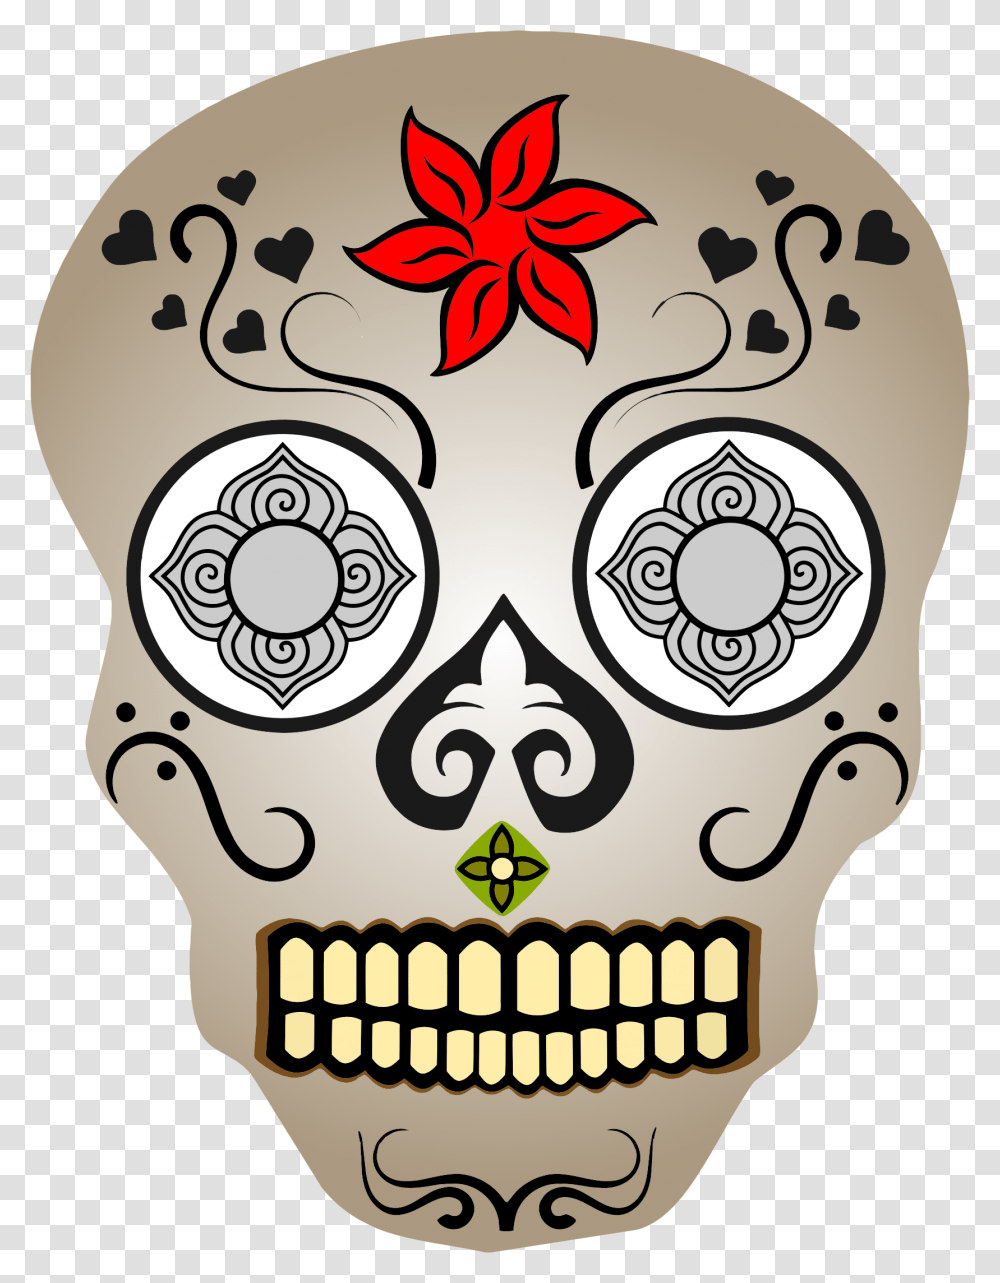 Ornate Skull 2 Clip Arts Easy Sugar Skull, Doodle, Drawing, Floral Design Transparent Png